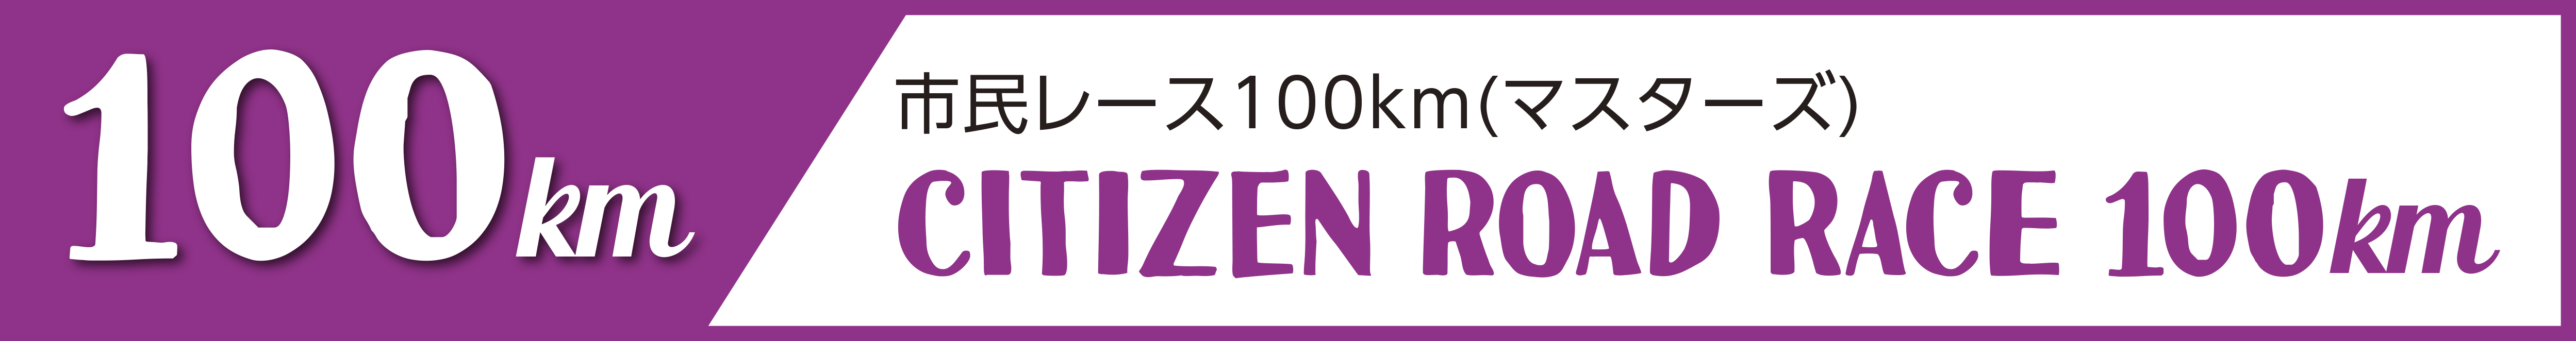 市民レース100km(マスターズ)